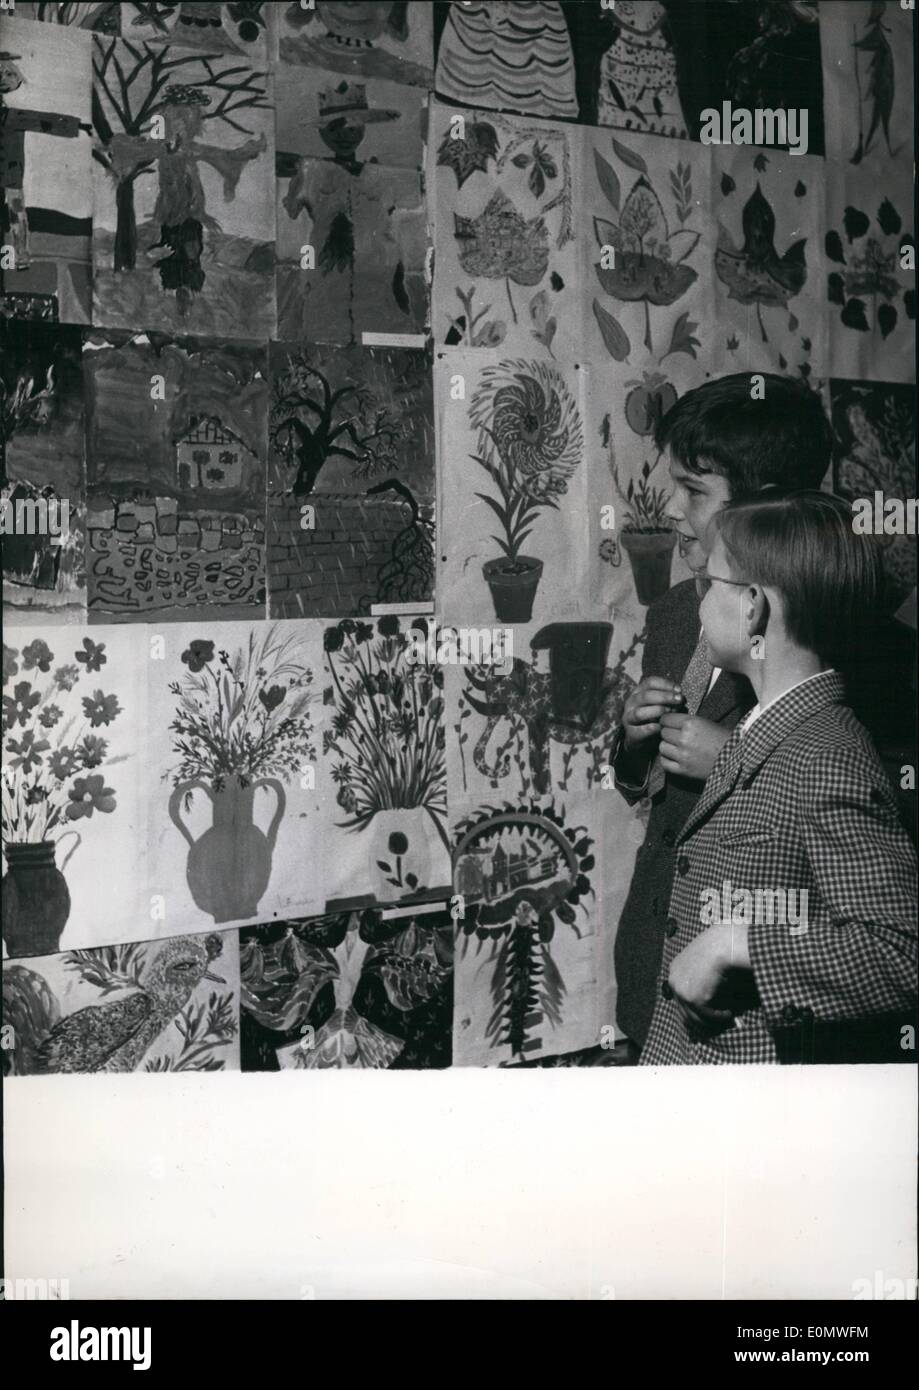 Jul 07, 1956 - Los adolescentes presentan dibujos; una exposición de dibujos realizados por niños entre las edades de 6 y 15 años está ahora Foto de stock